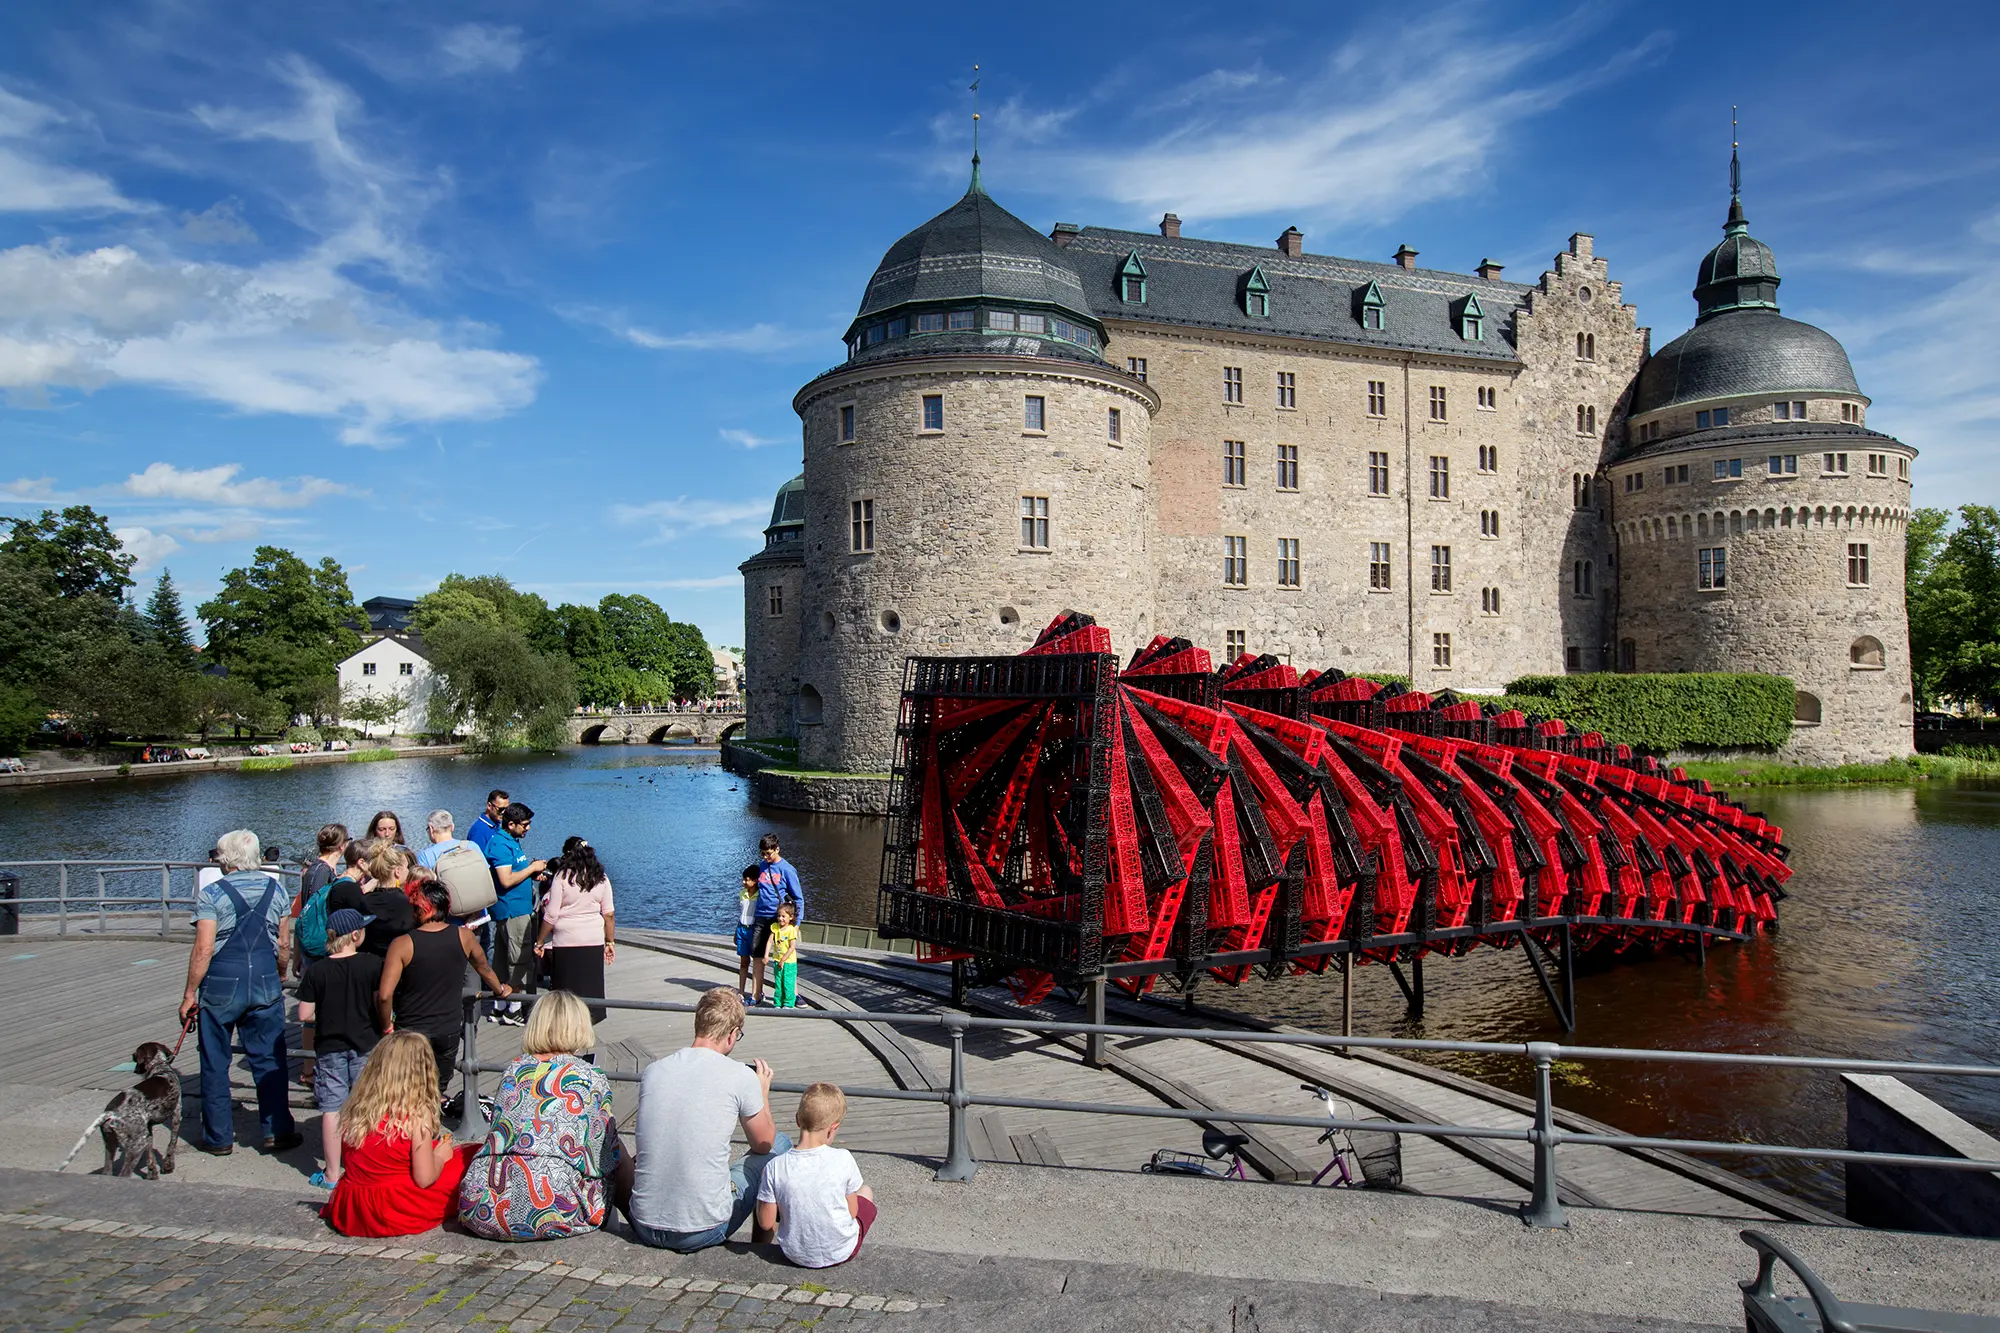 Framför Örebro slott syns en stor skulptur i formen av en tät spiral uppbyggd av röda och svarta plastlådor. Till vänster syns människor som står framför skulpturen och tar kort.